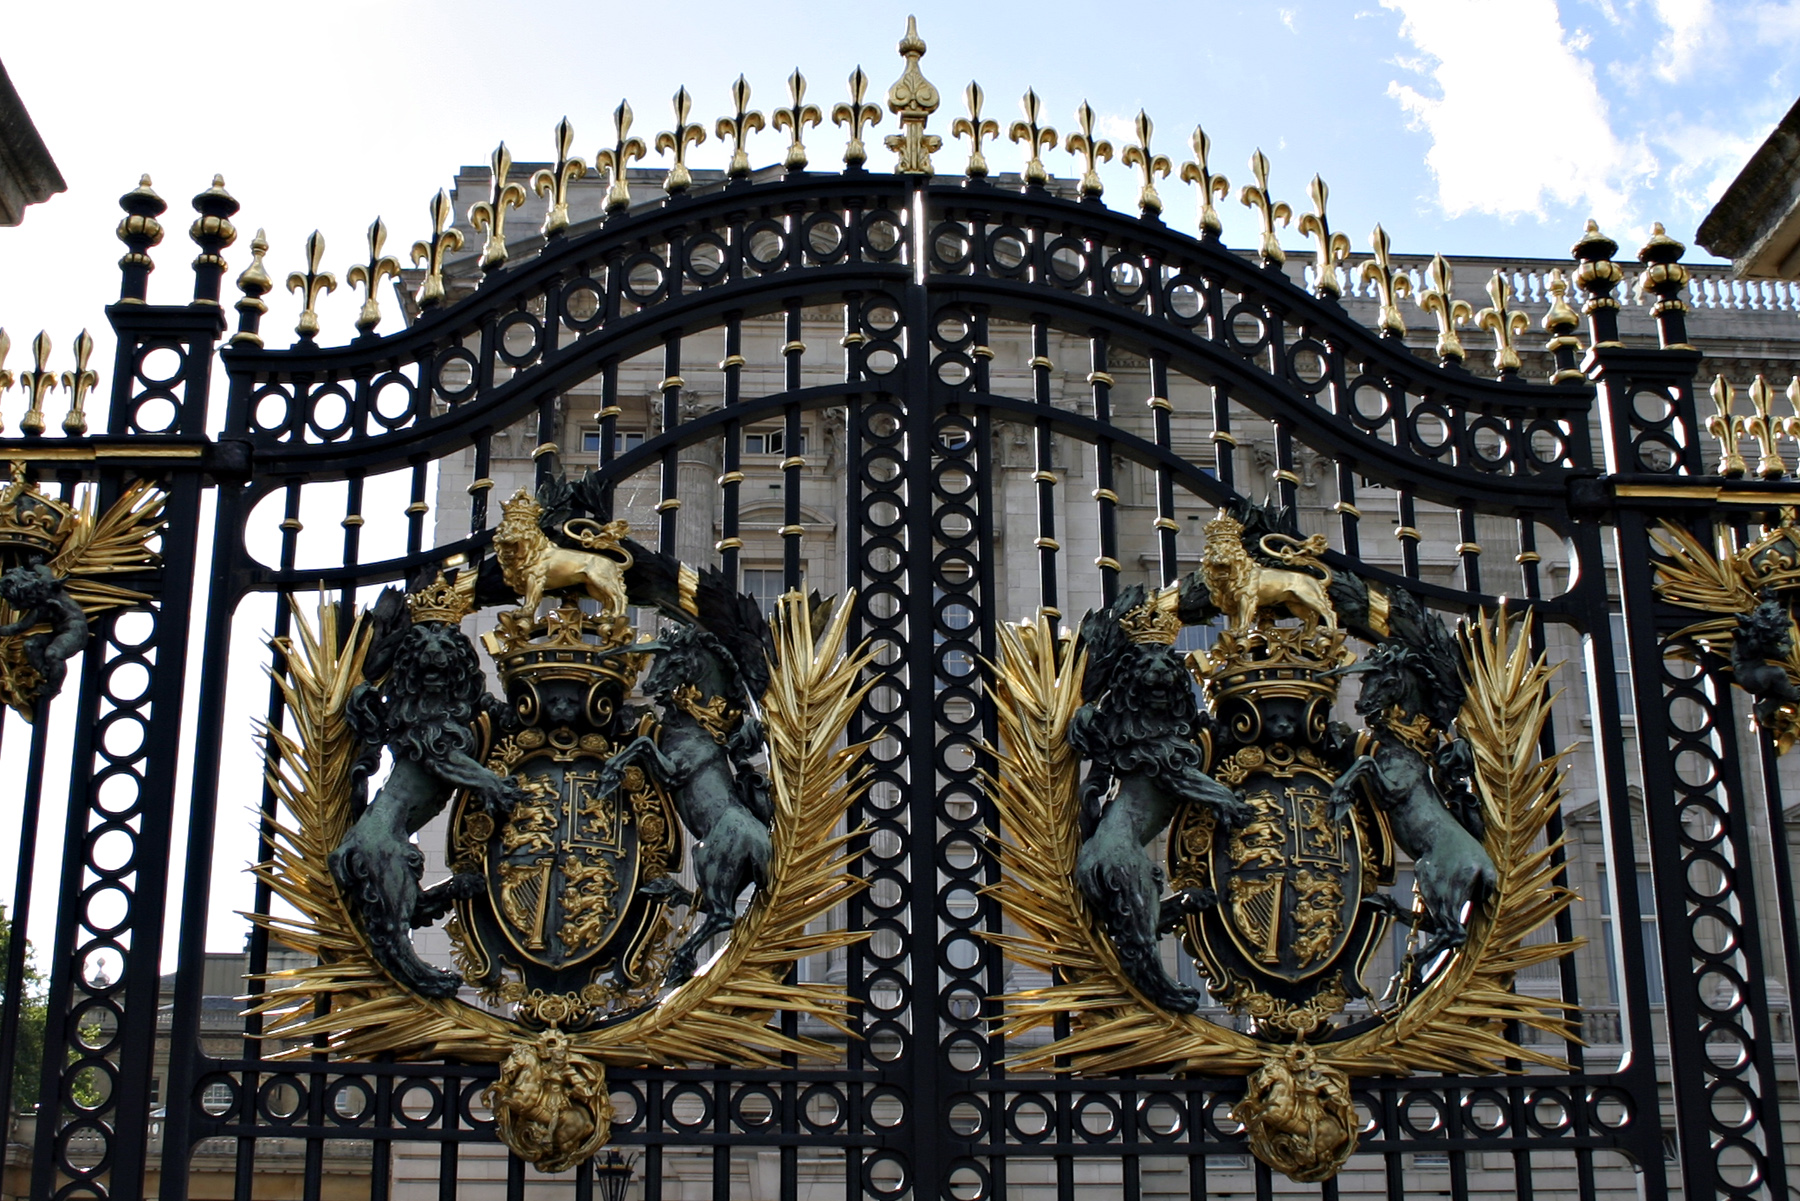 The gates of buckingham palace photo